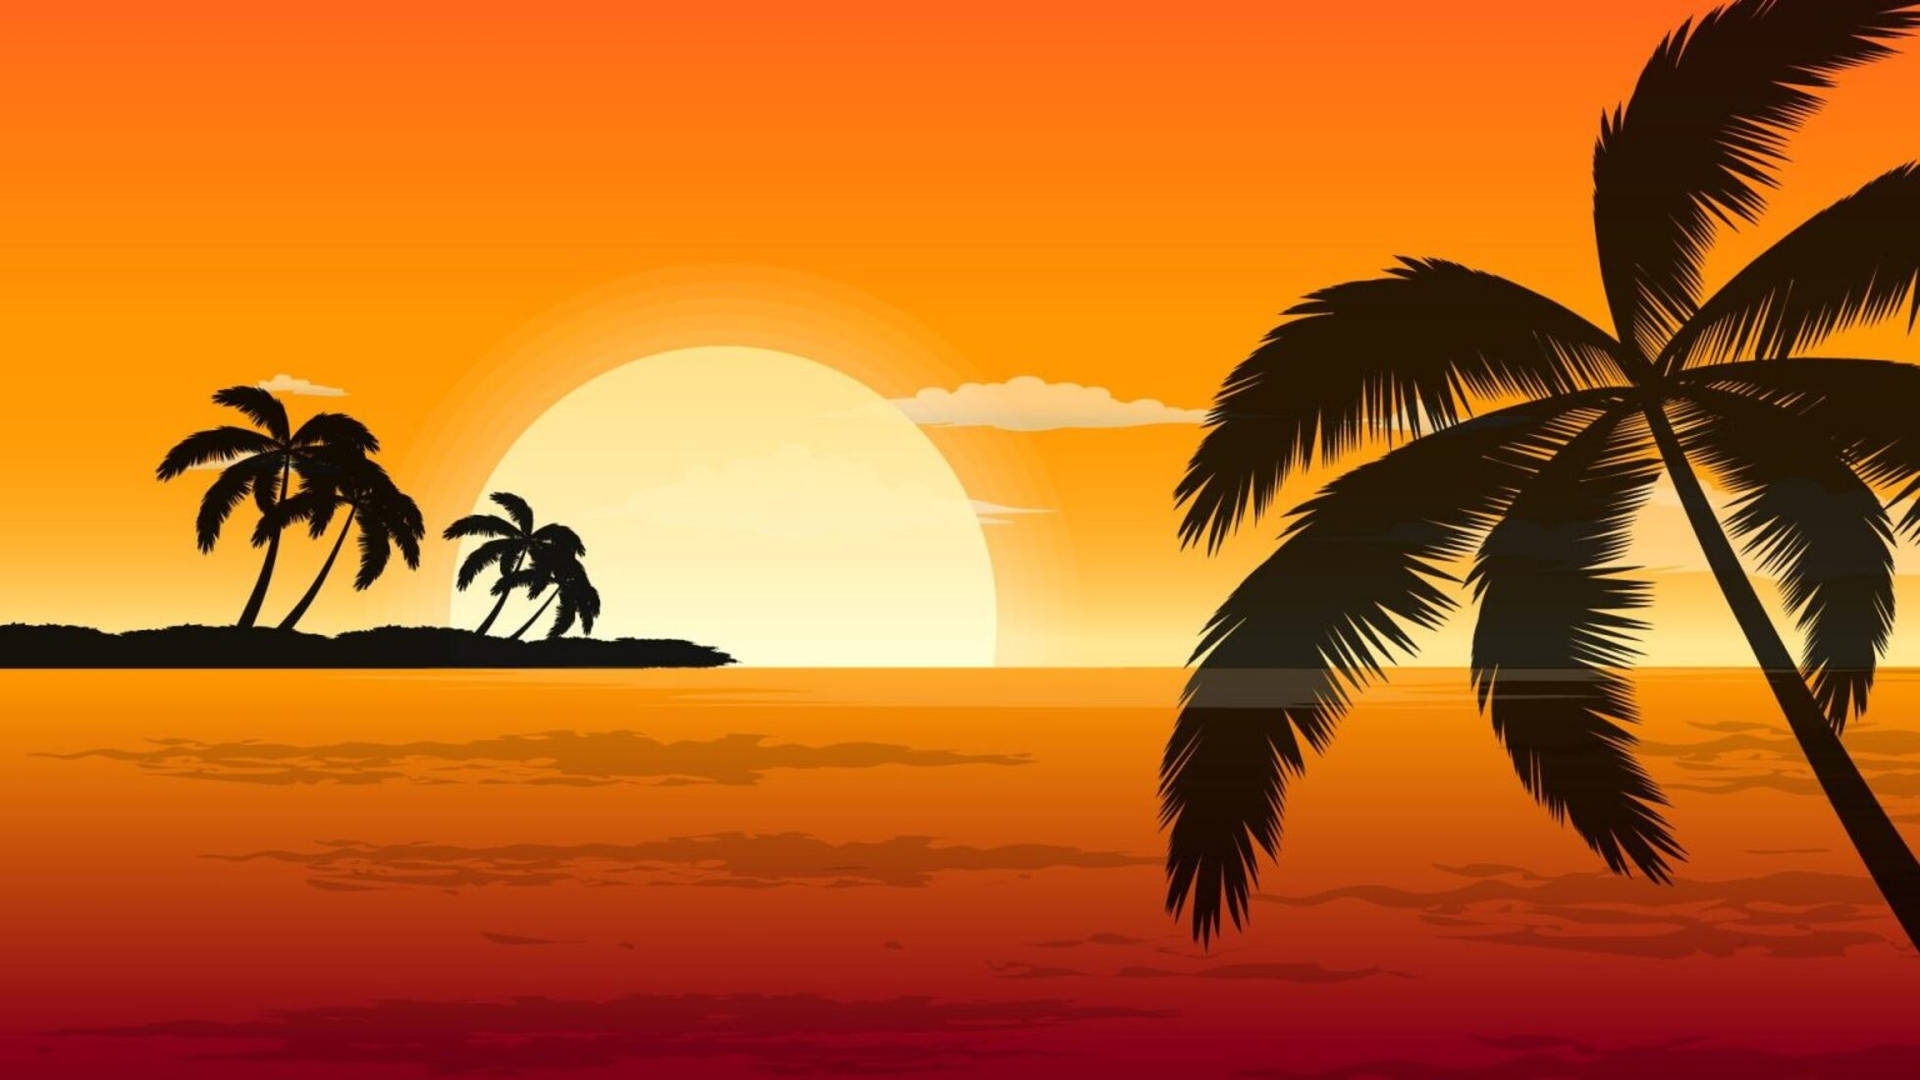 Orange Aesthetic Sunset Island Background